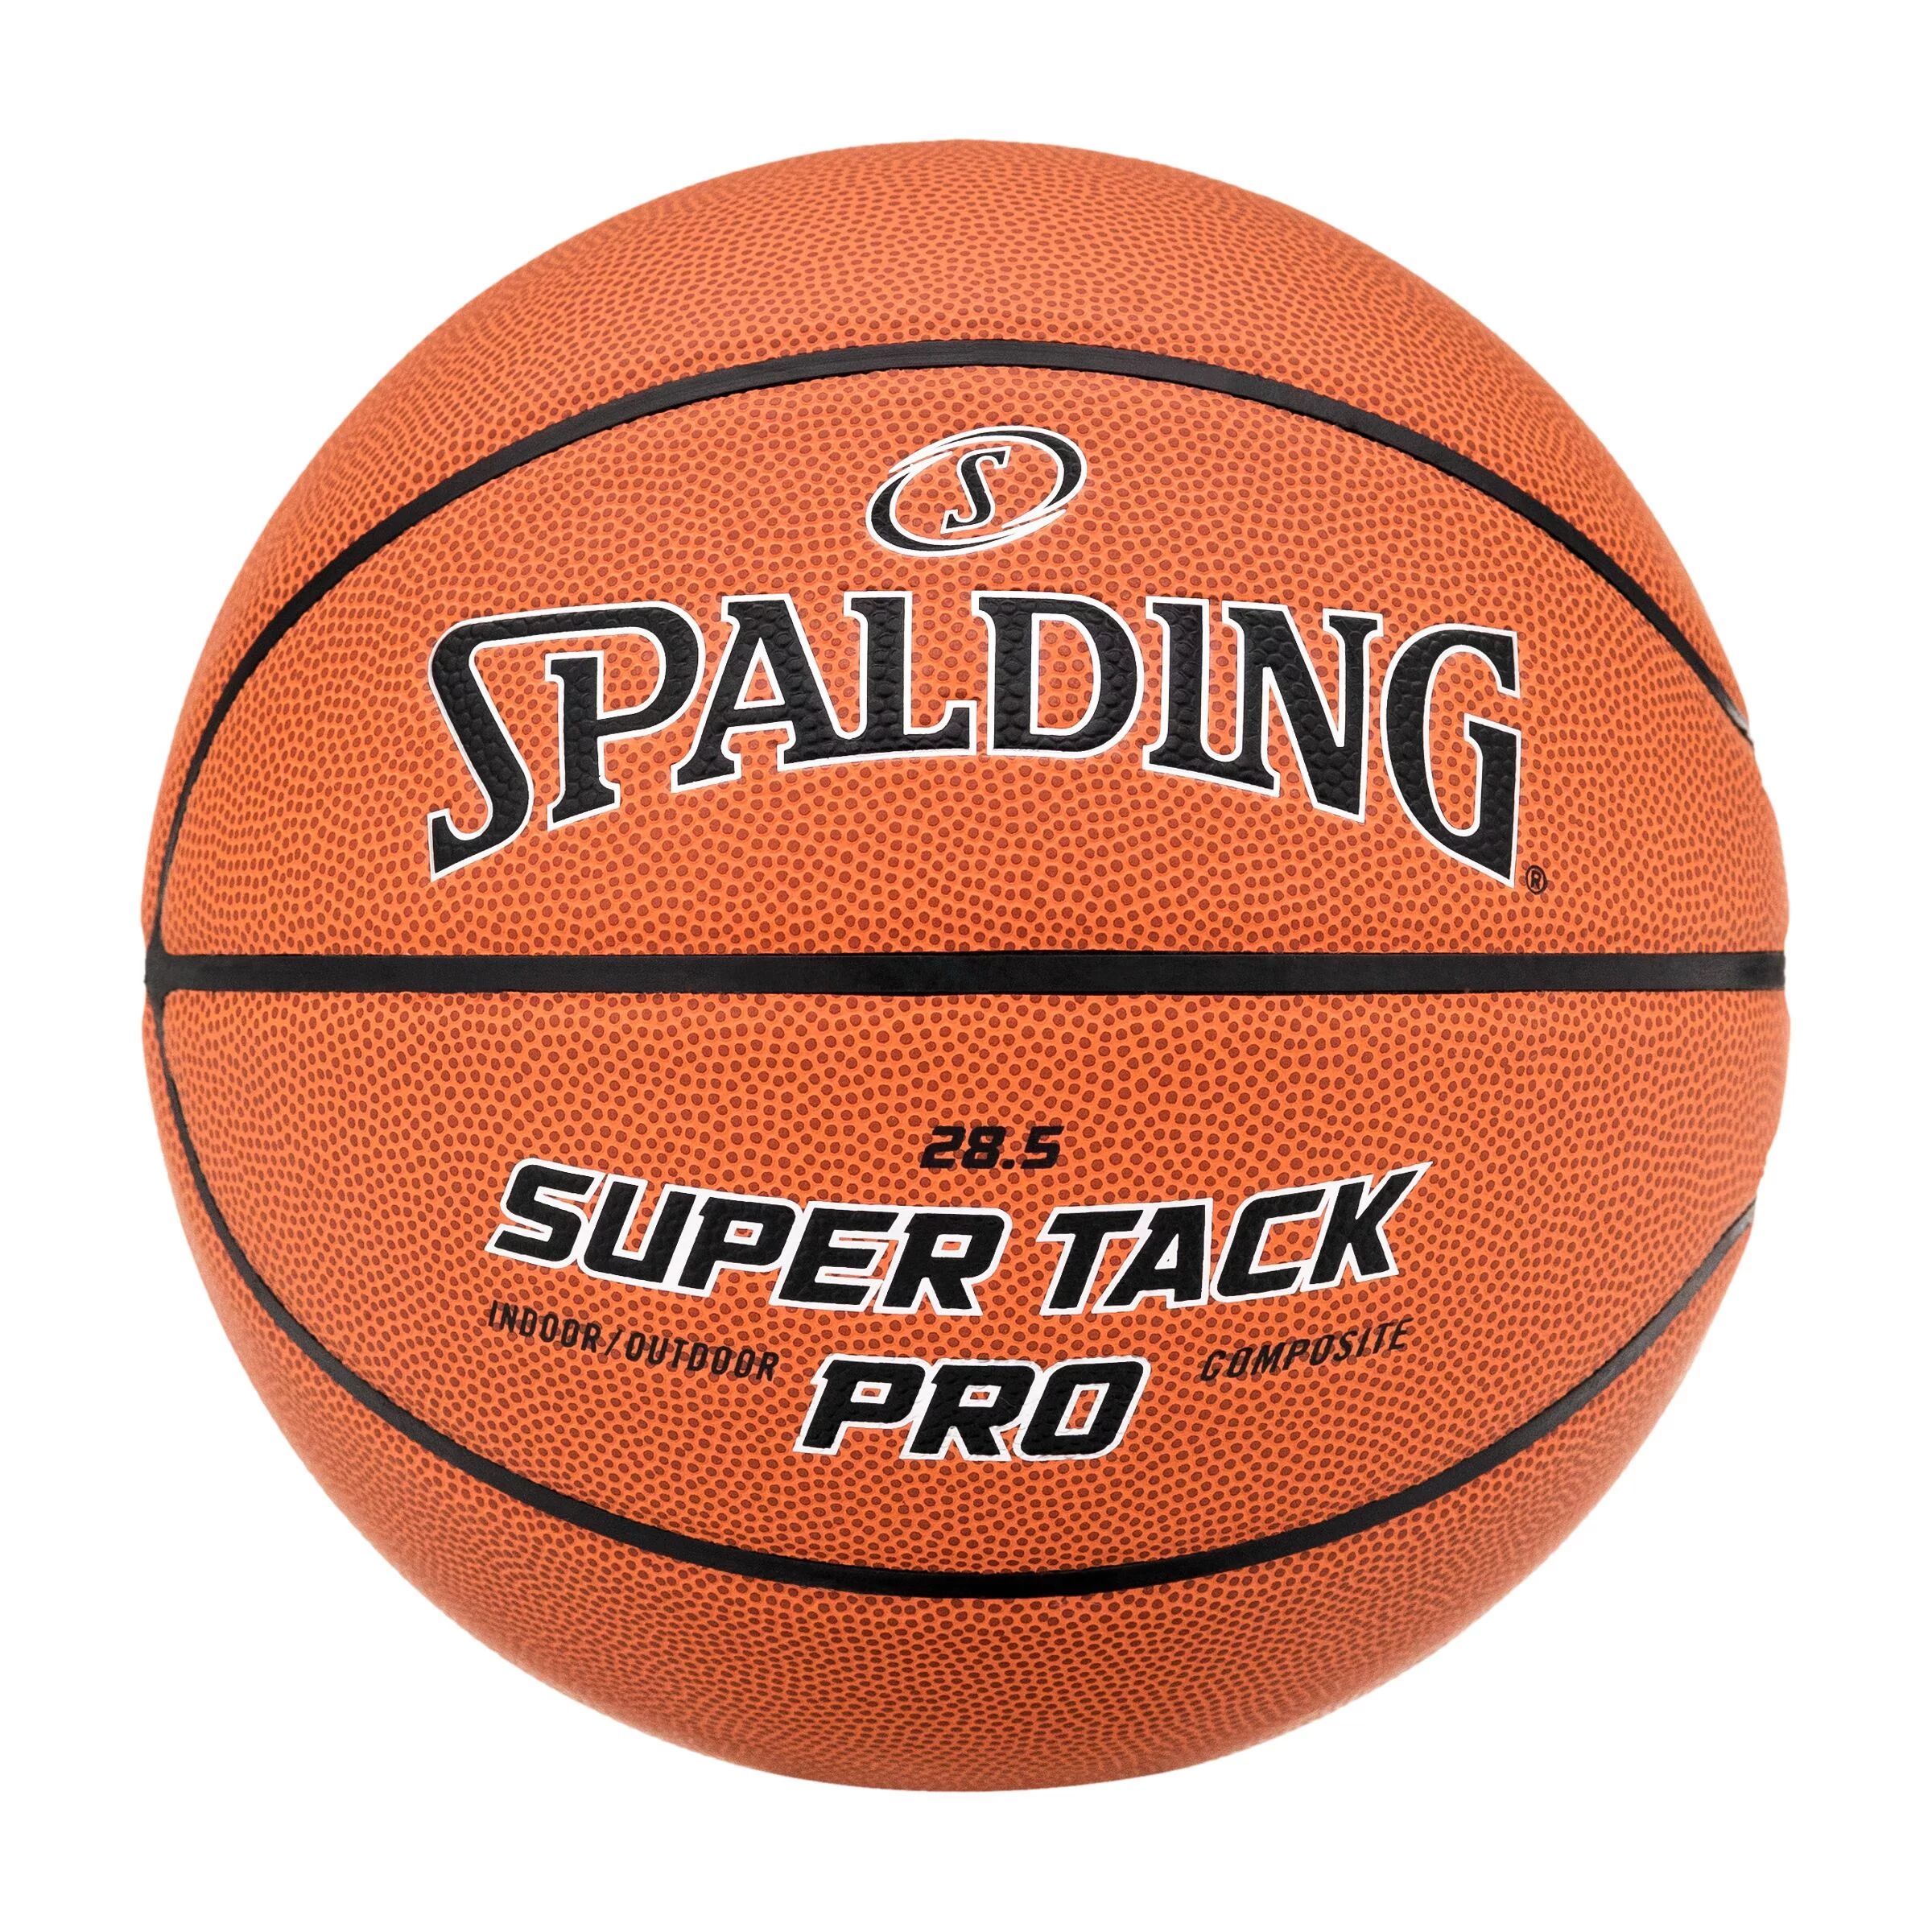 Spalding Super Tack Pro Indoor and Outdoor Basketball- 28.5 In., - Walmart.com | Walmart (US)